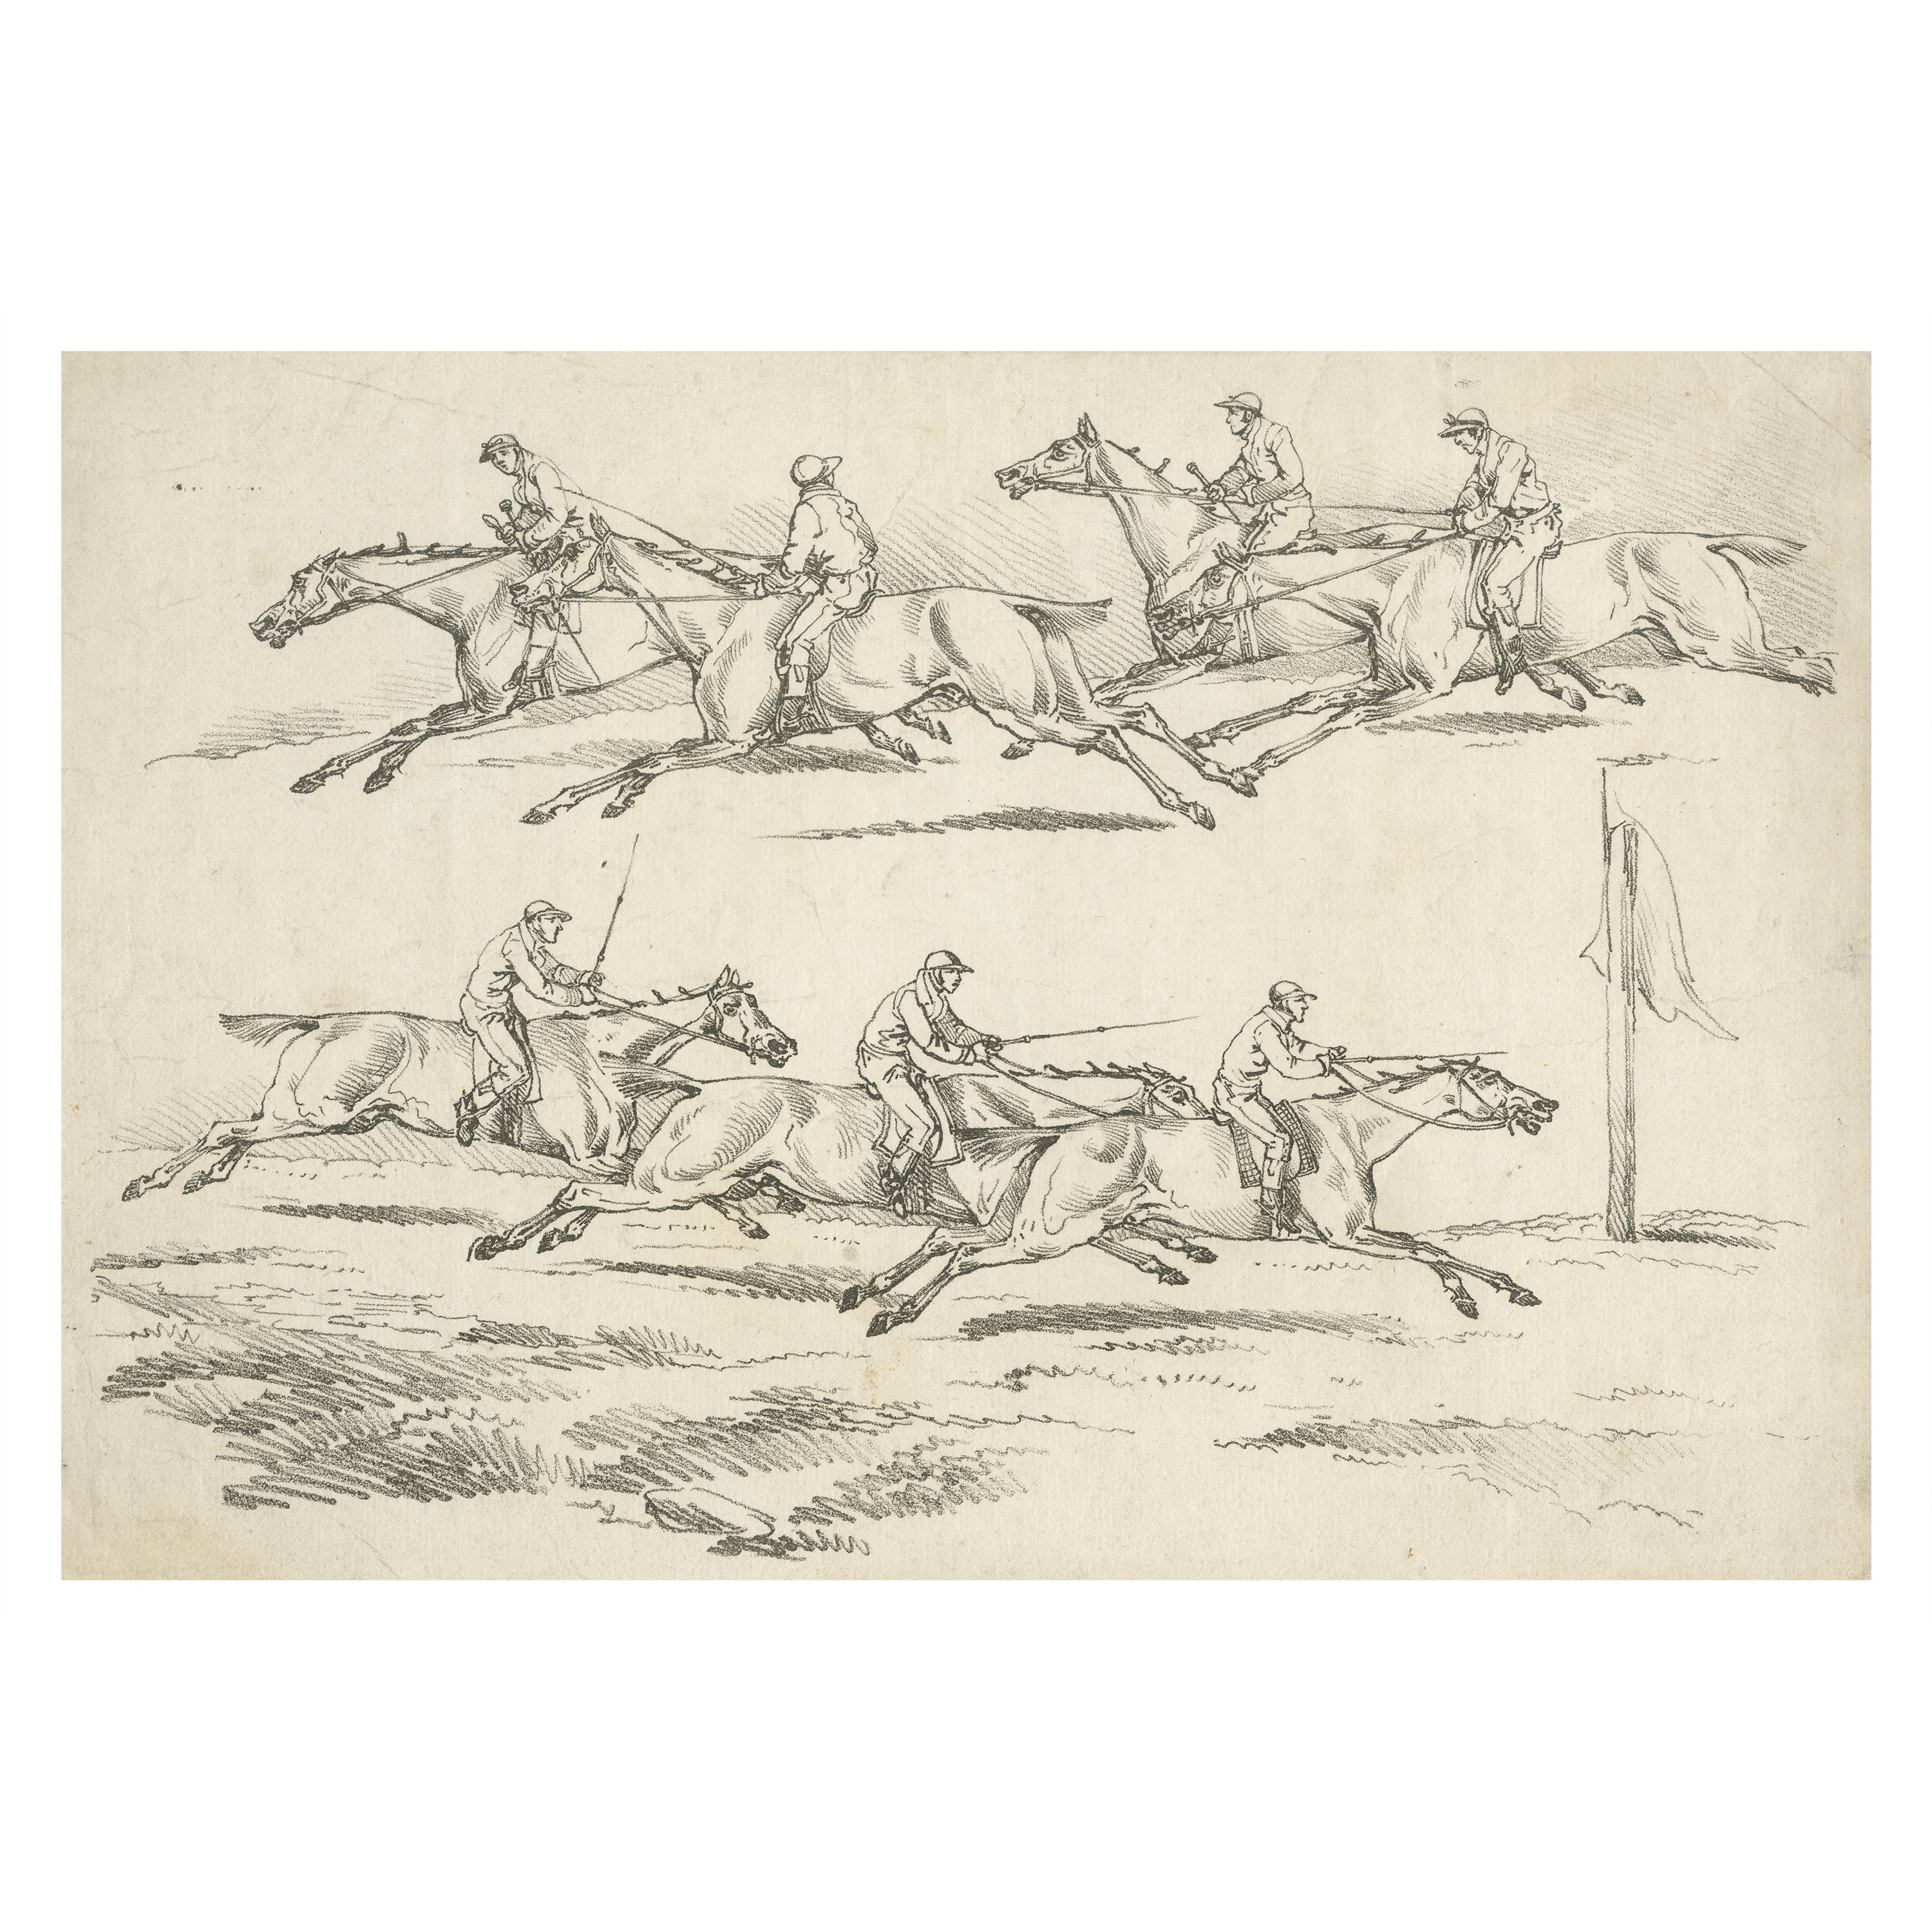 Originaler unfarbiger antiker Druck eines Pferderennens in England, 1817